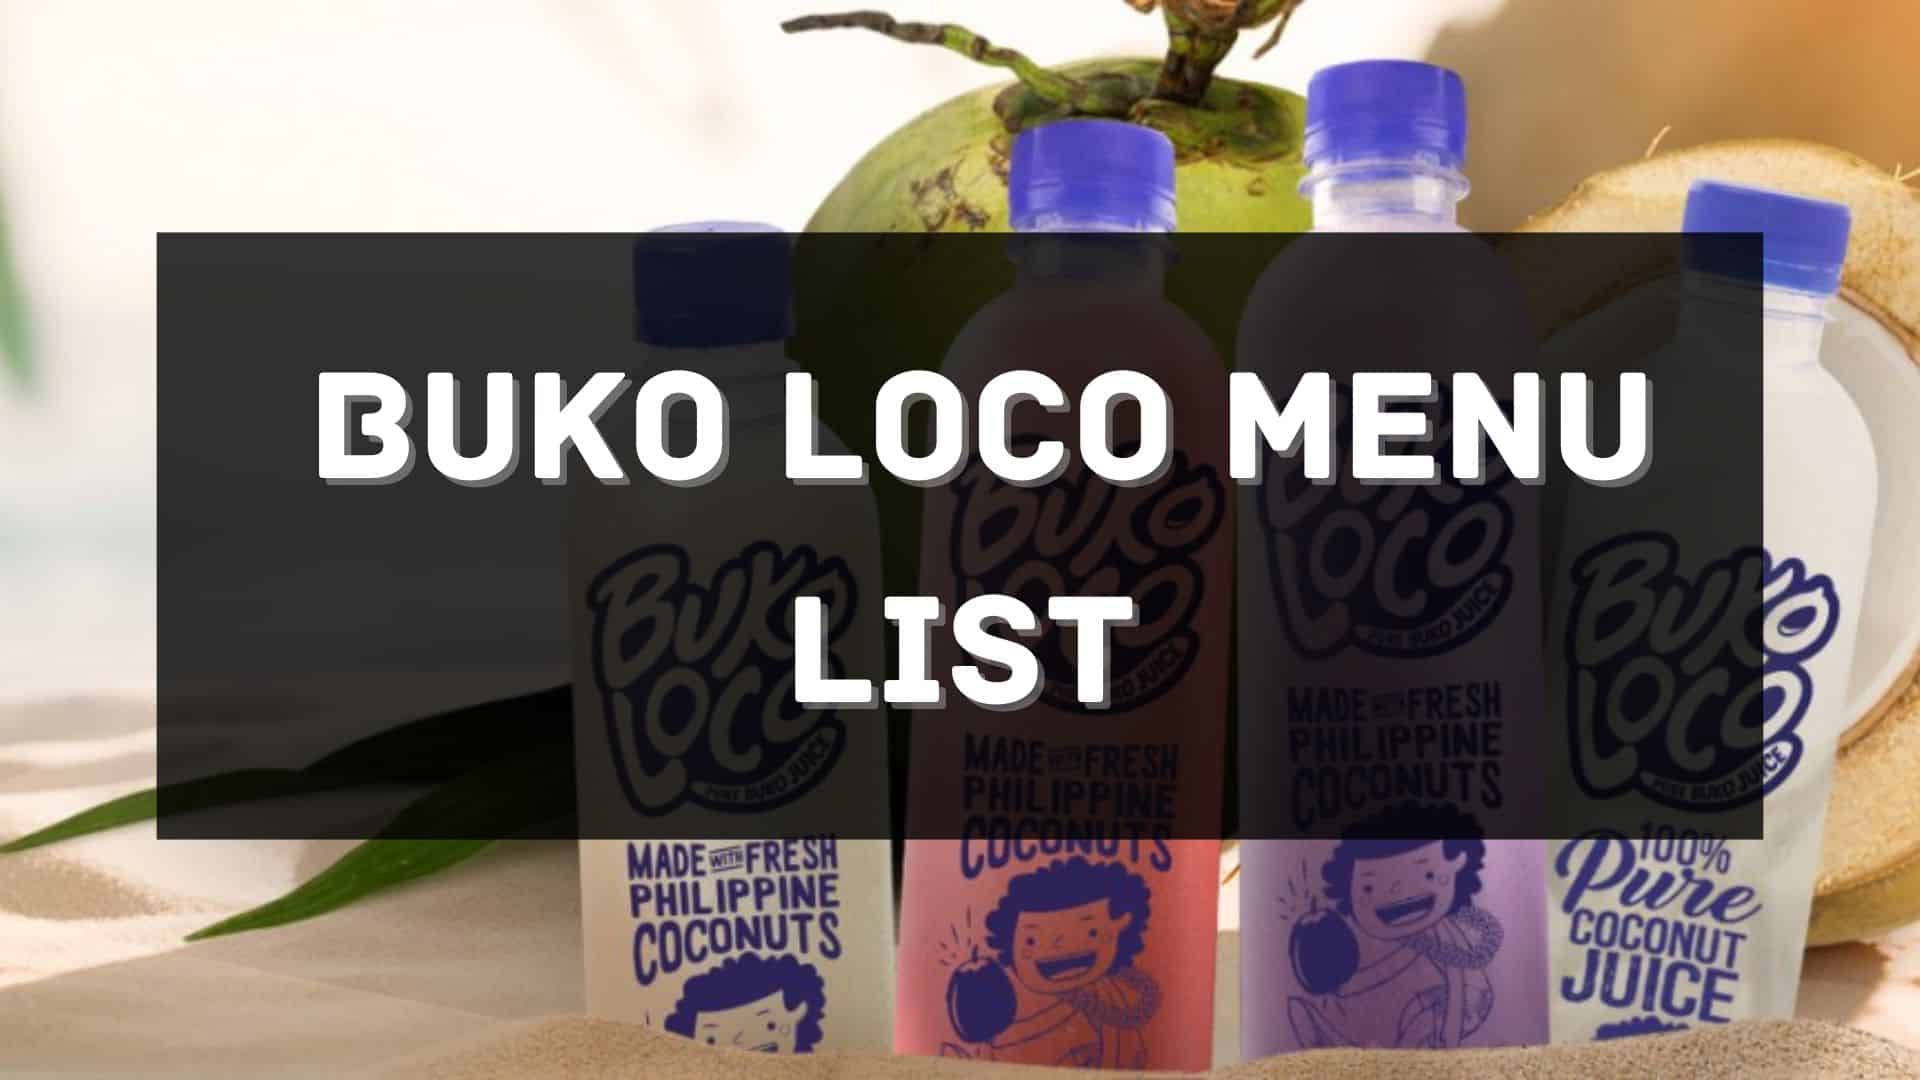 buko loco menu prices philippines